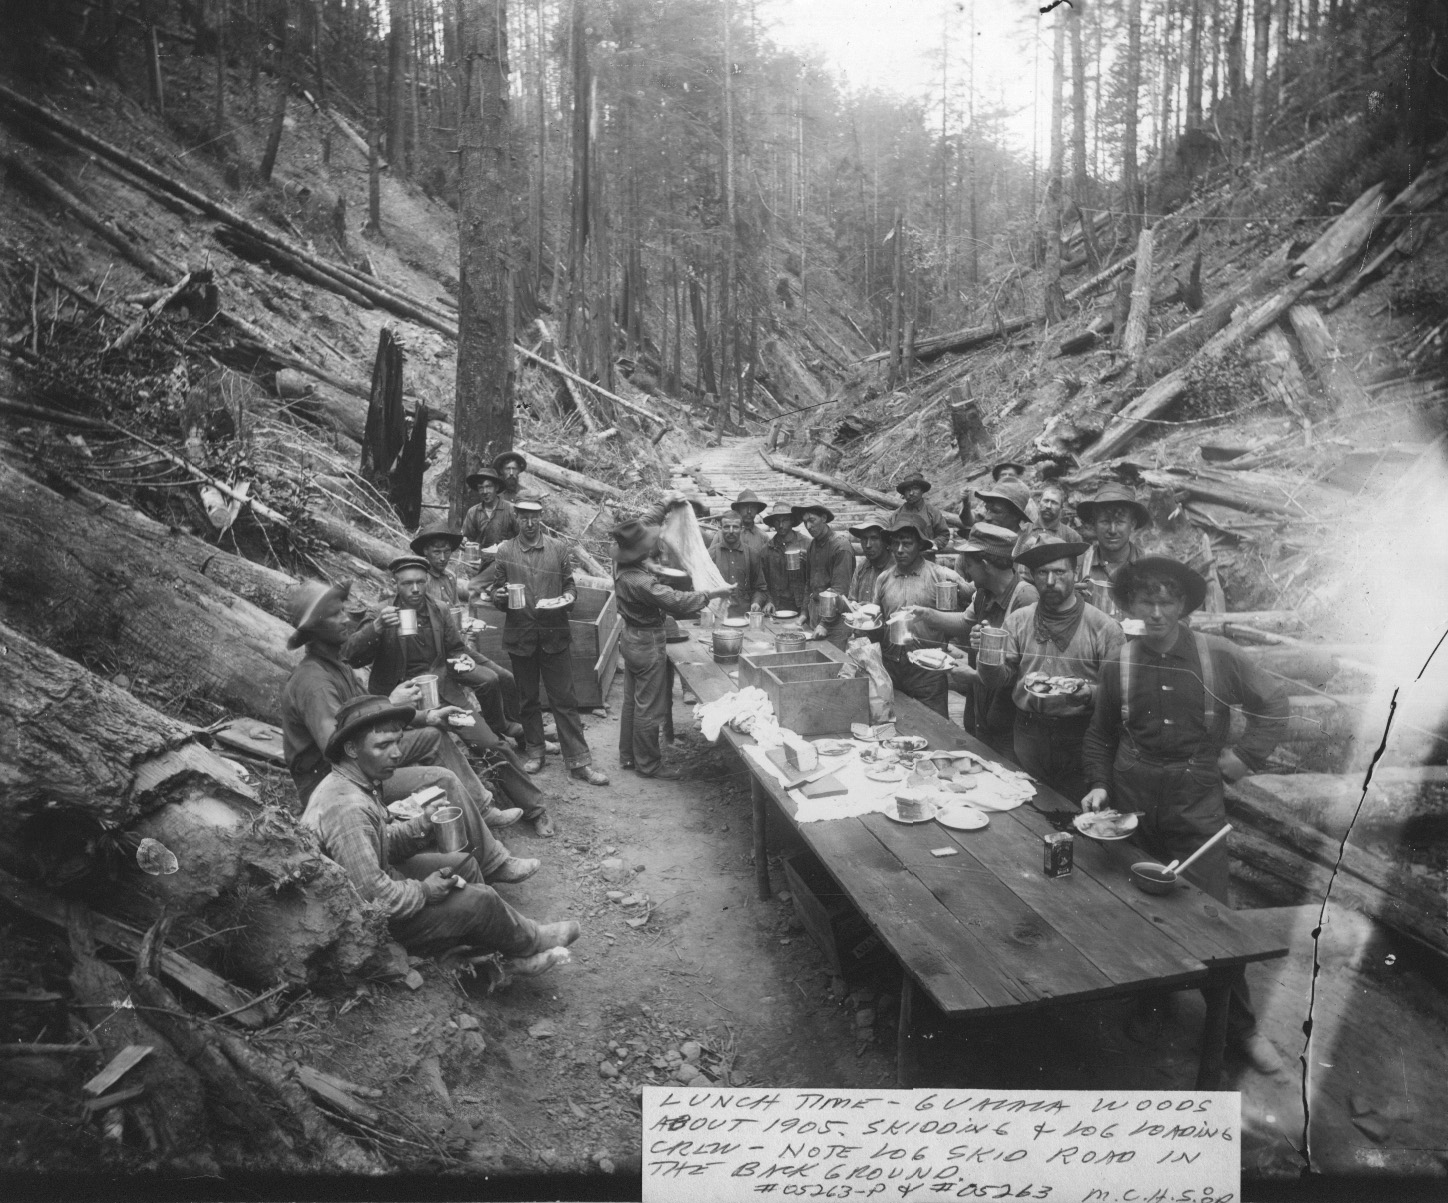 Logging History